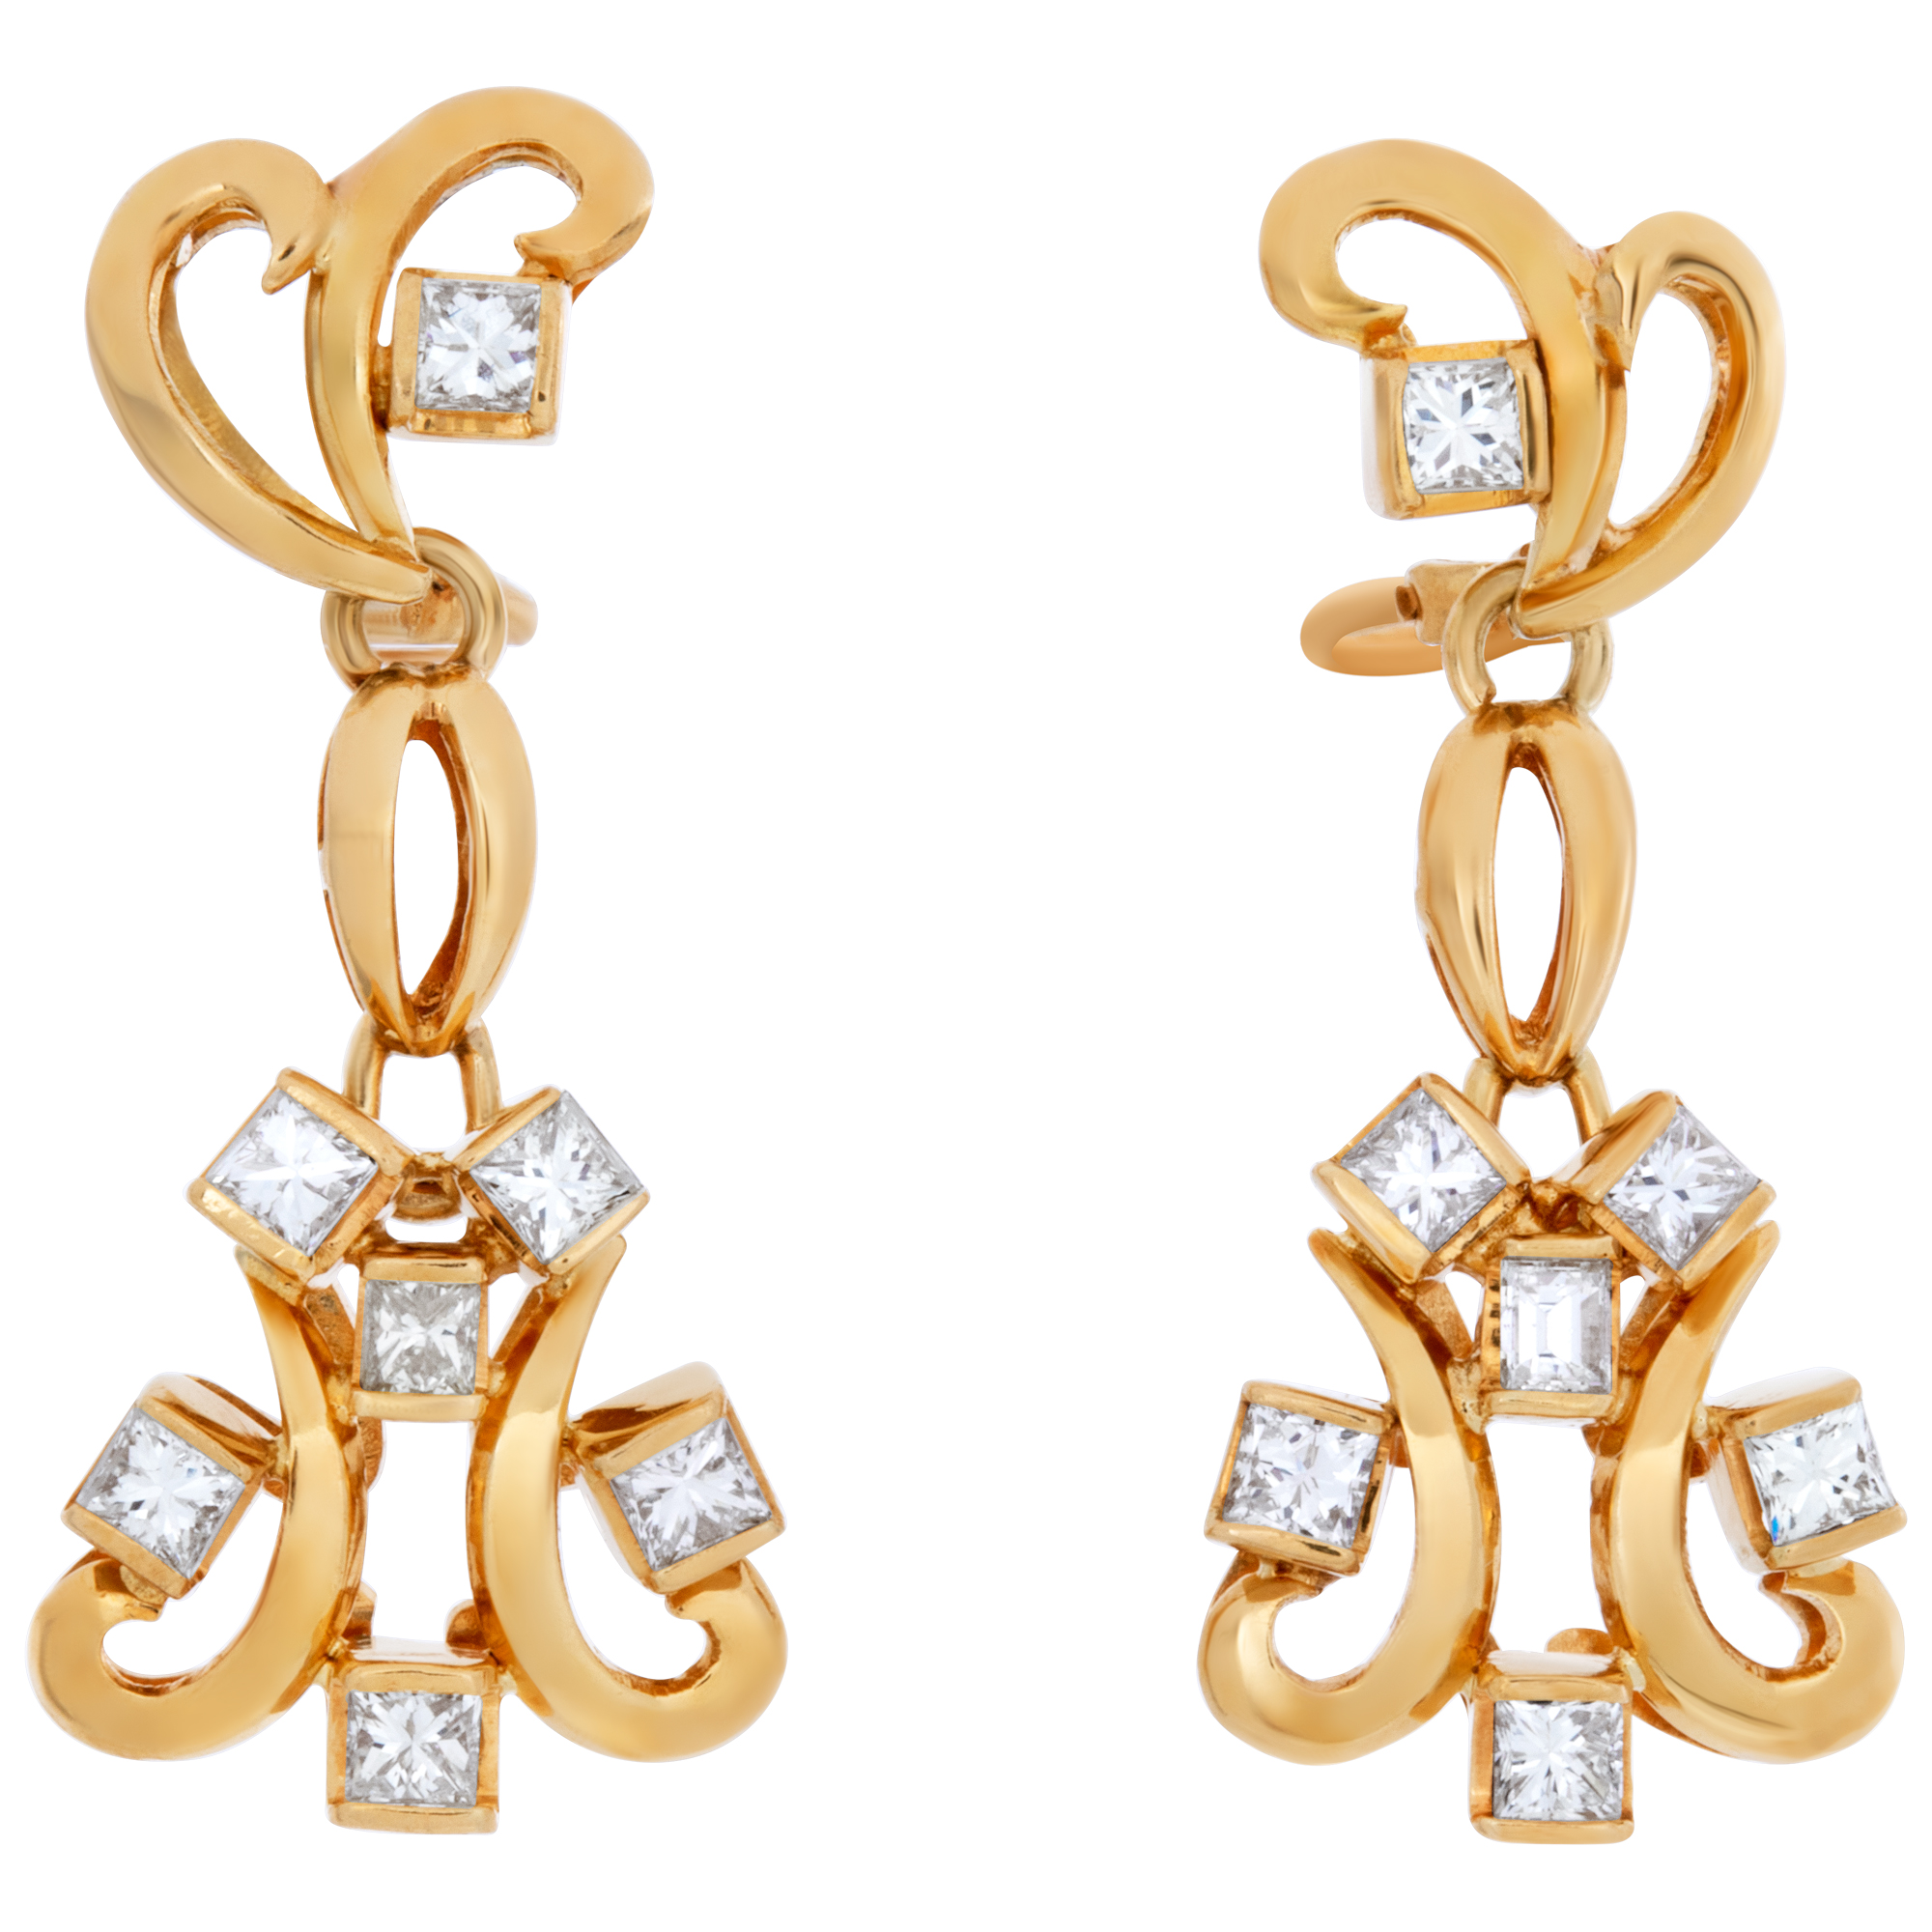 Swirl diamond dangle earrings in 18k yellow gold